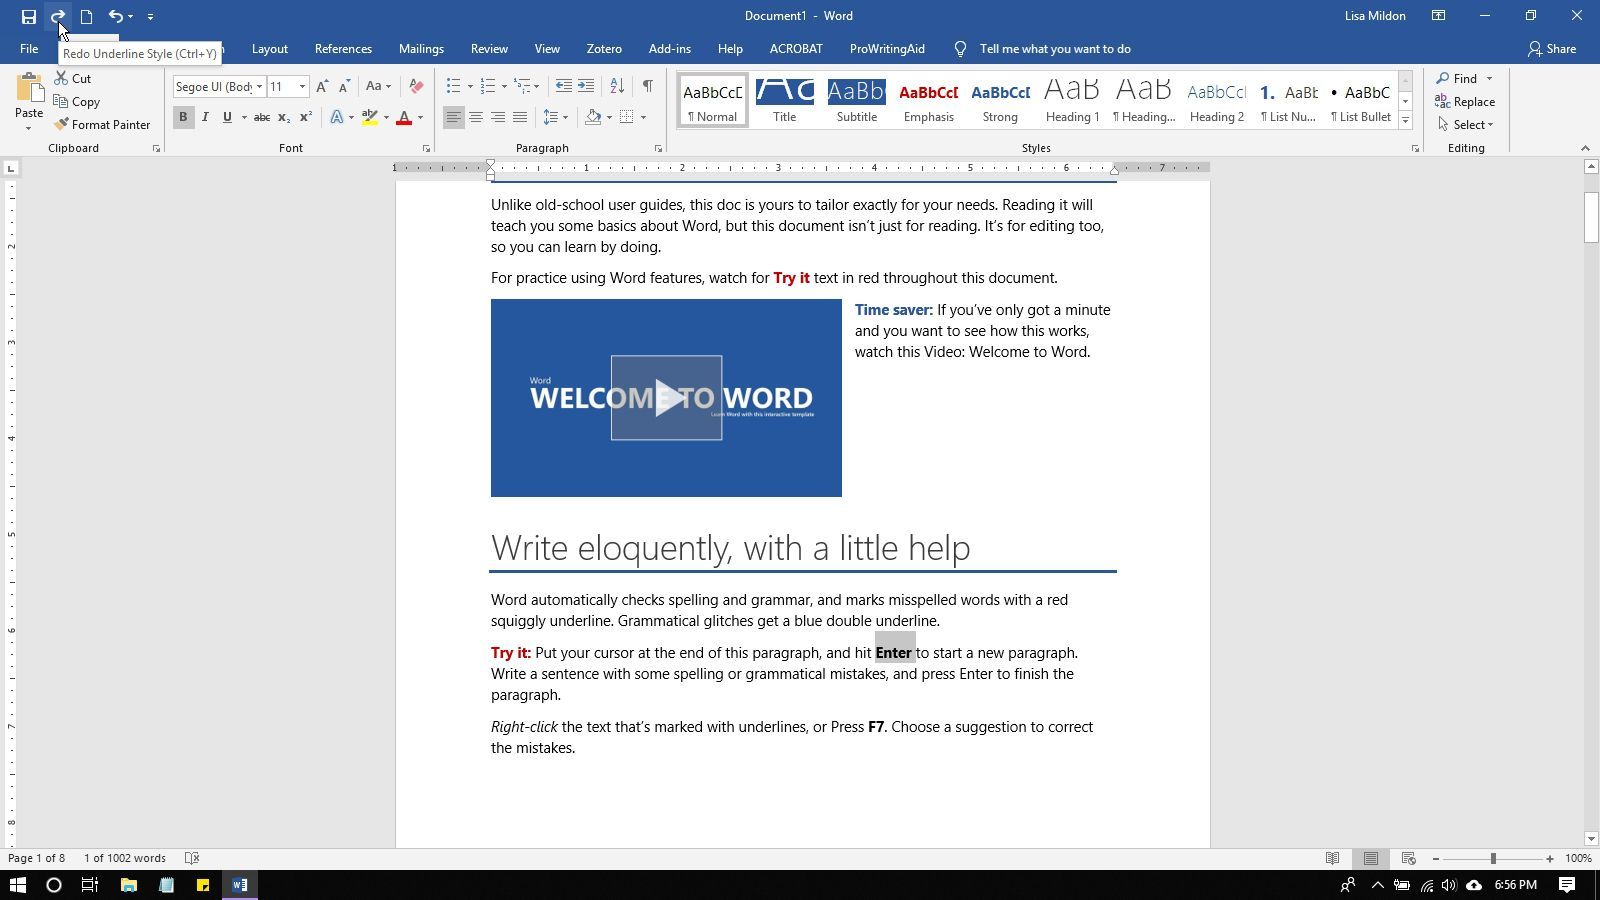 Команда «Вернуть» отображается на панели быстрого доступа в Microsoft Word.